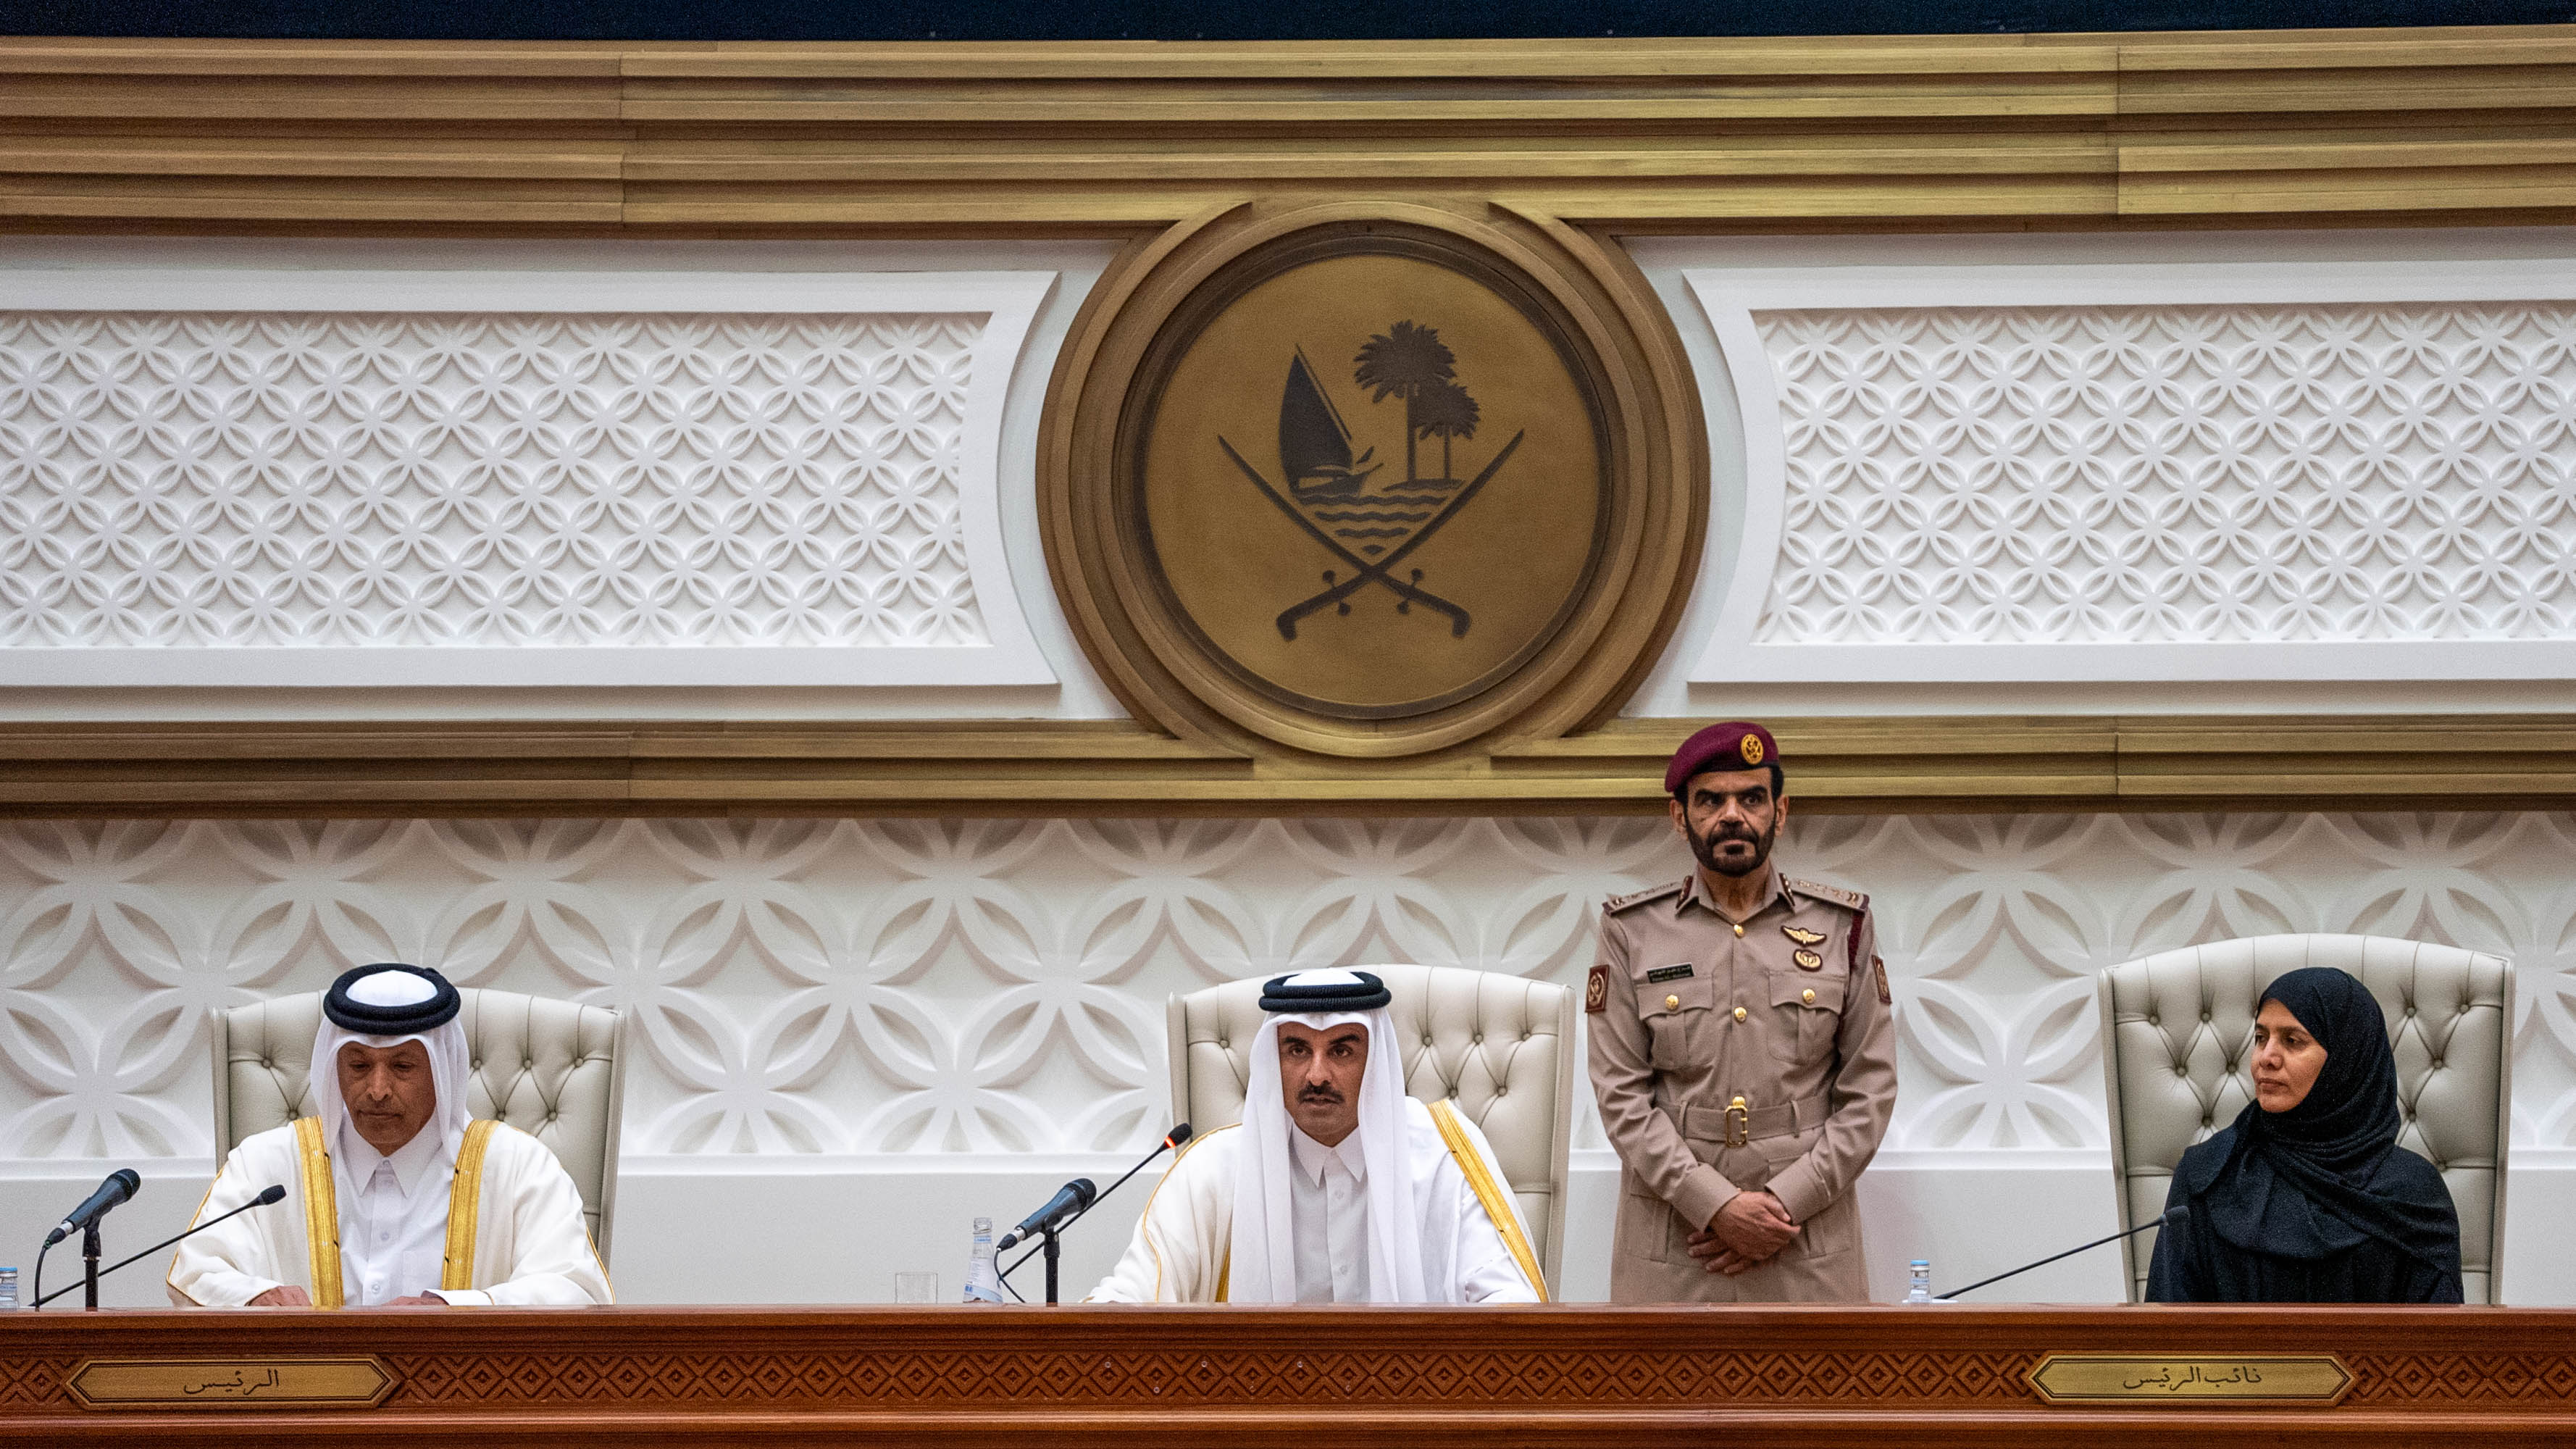 رئيس مجلس الشورى: خطاب سمو الأمير يؤكد حكمة سموه في رسم السياسات التنموية الرشيدة